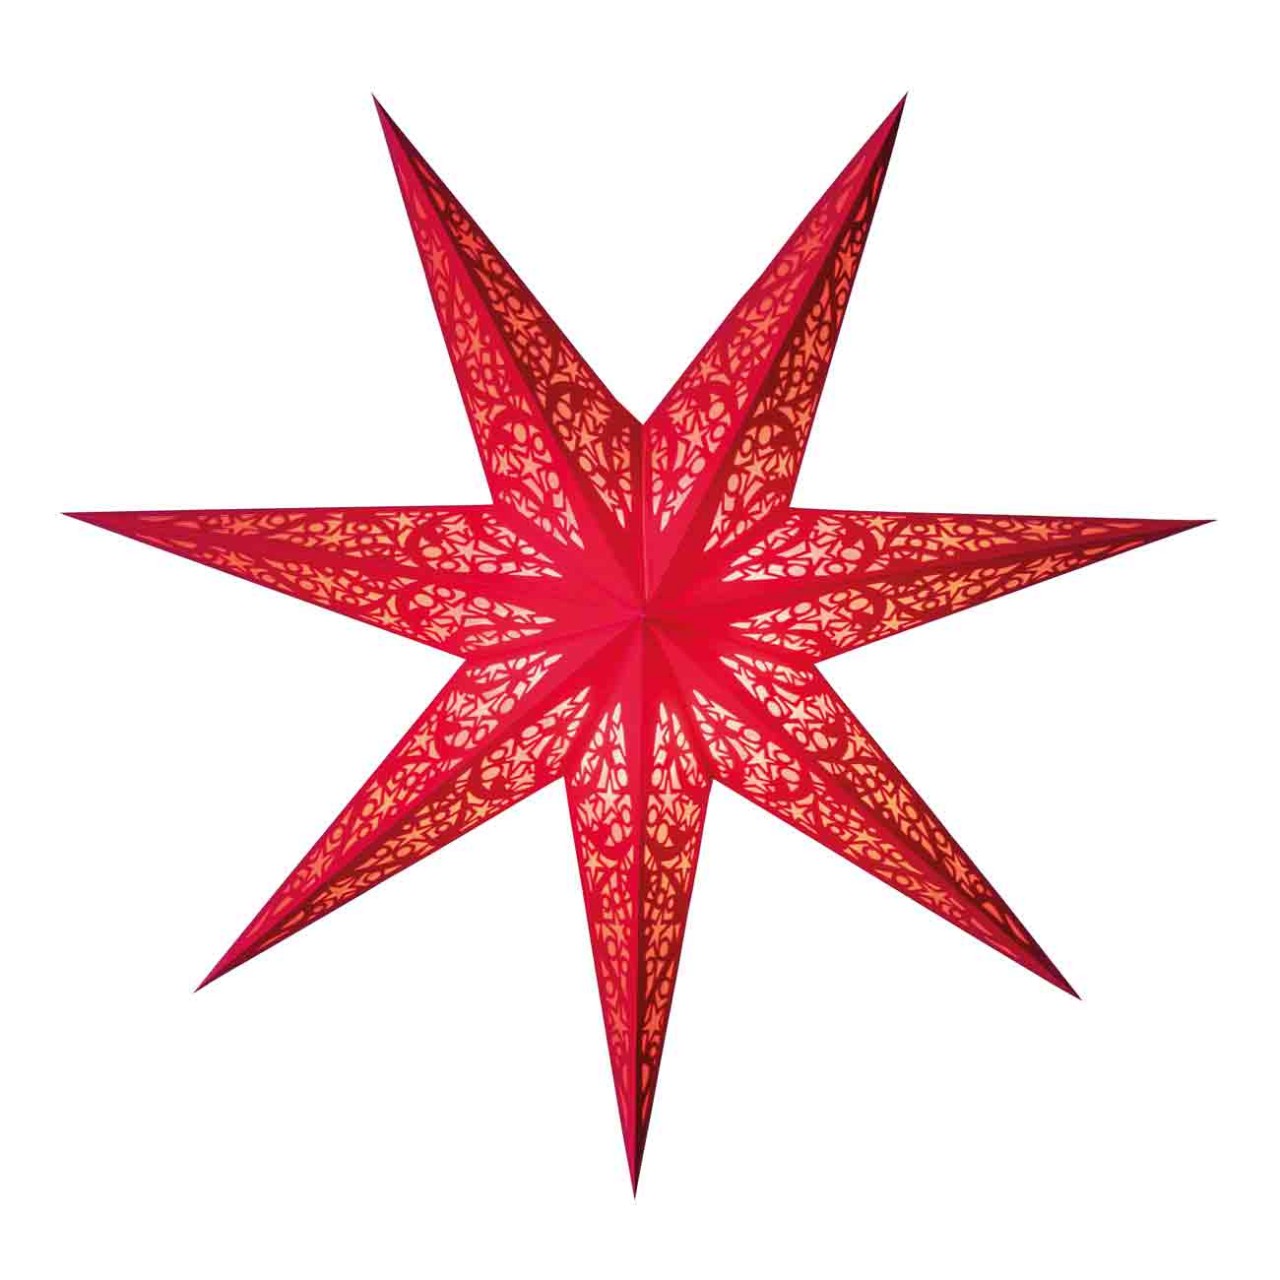 Papierstern starlightz lux red size M